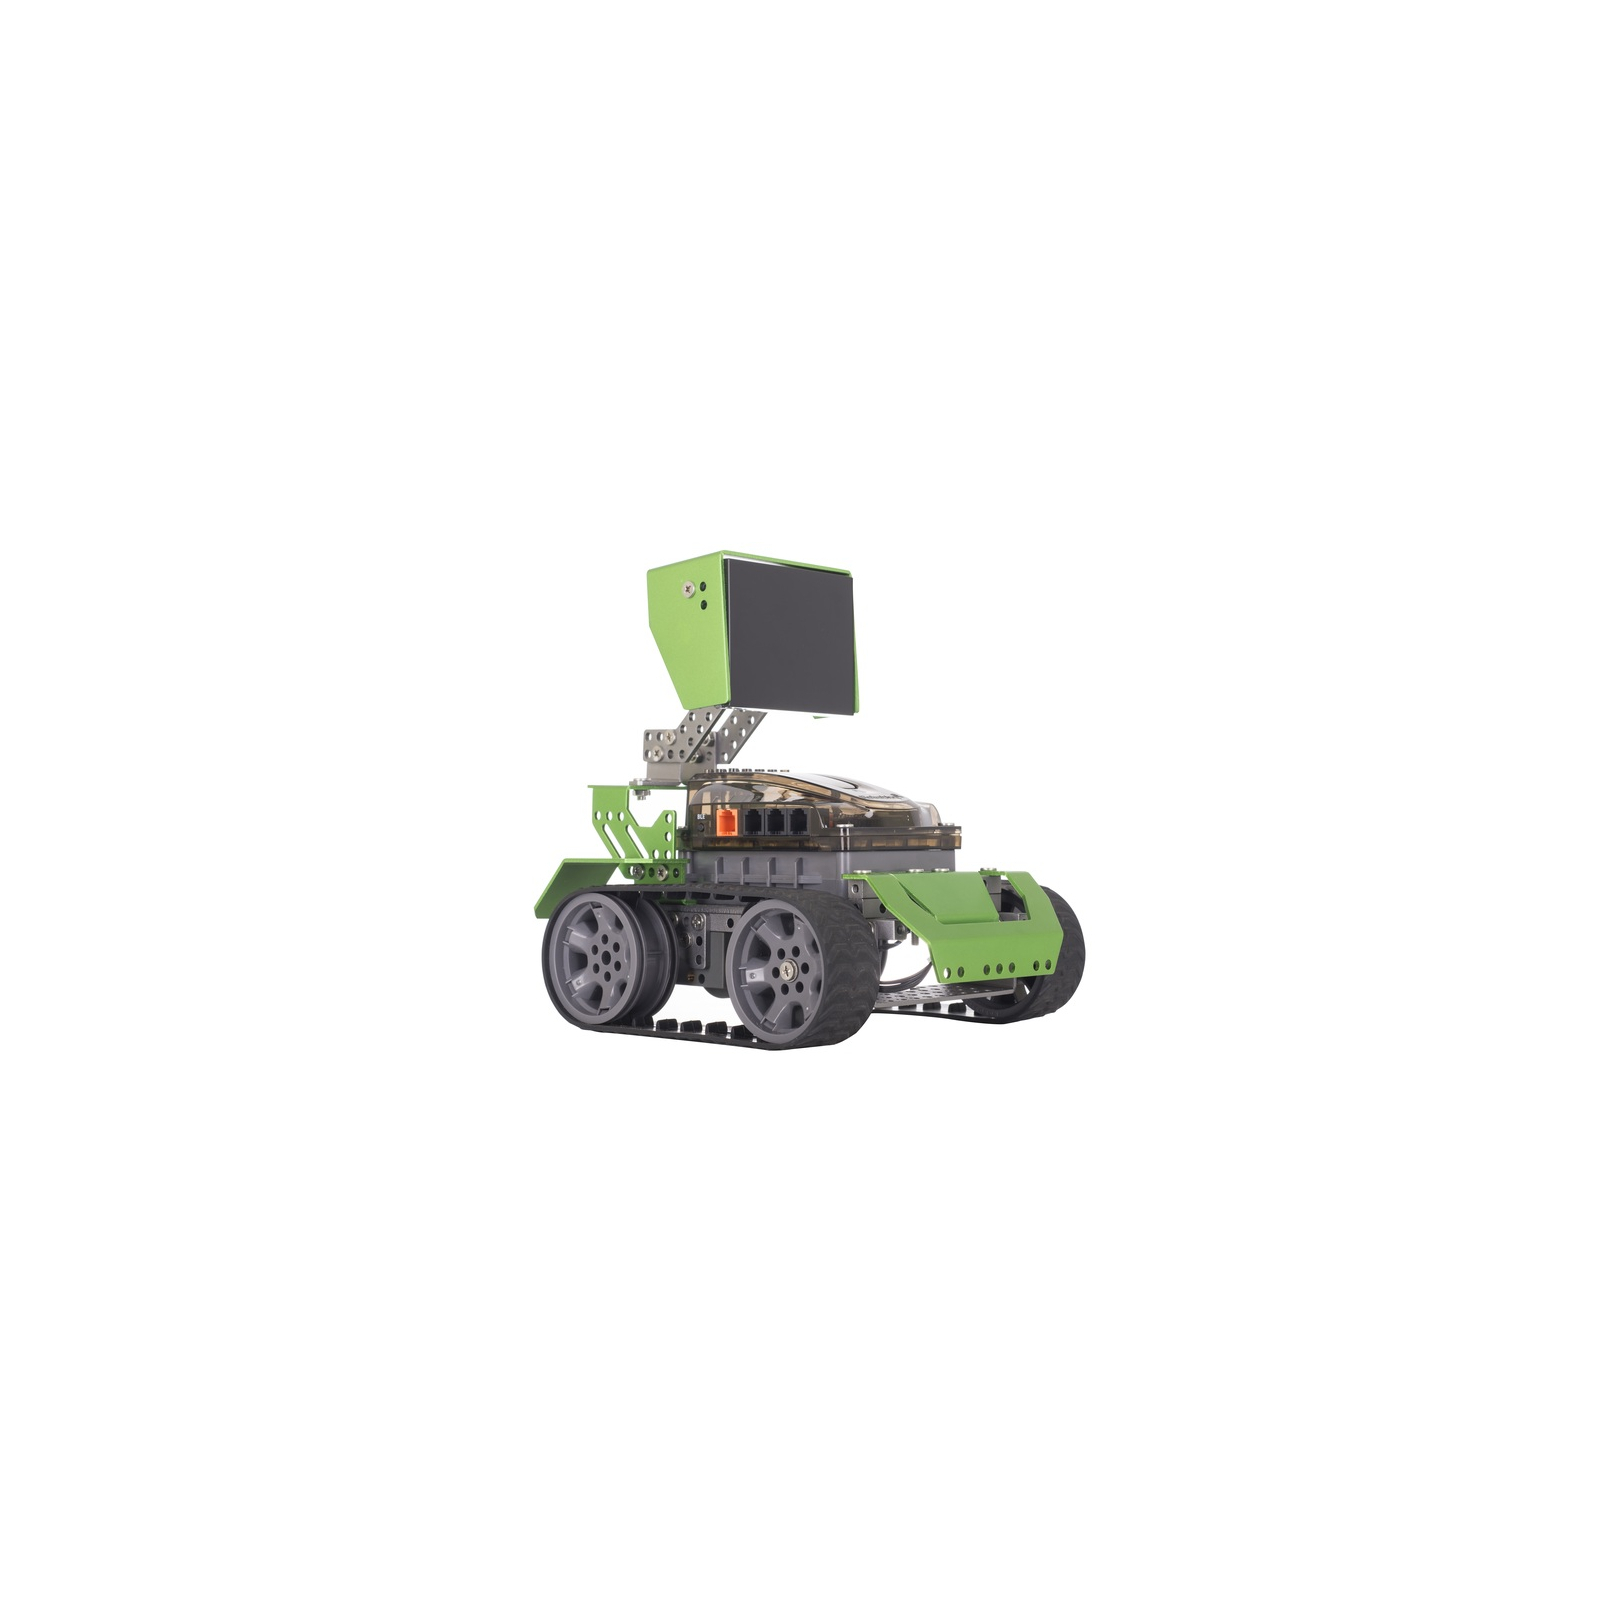 Інтерактивна іграшка Robobloq Робот Qoopers 6 в 1 (10110102) зображення 4